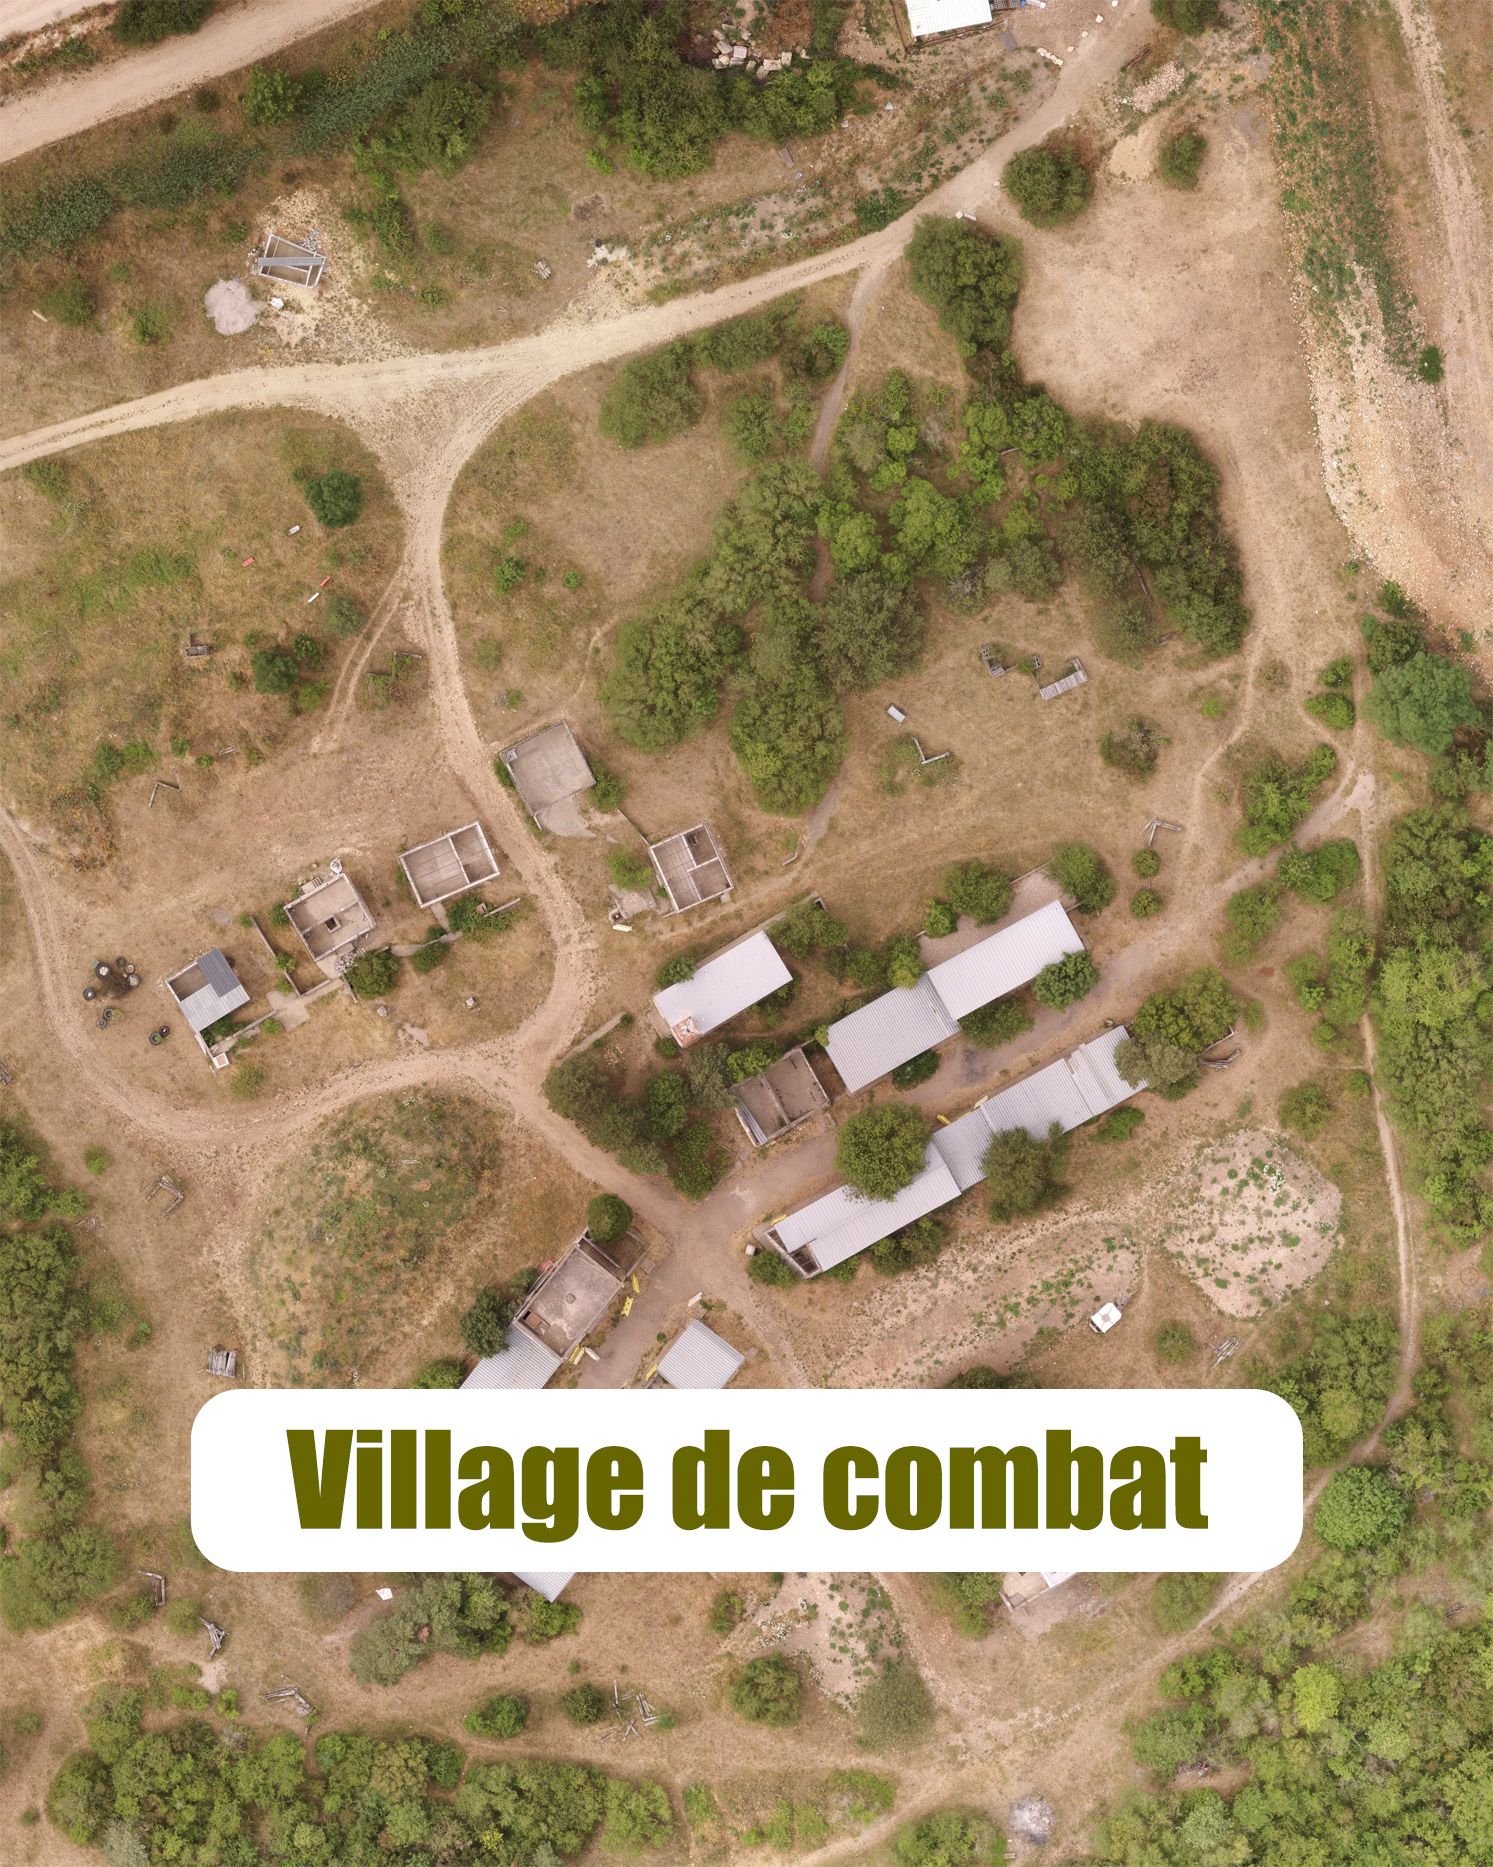 Village de combat